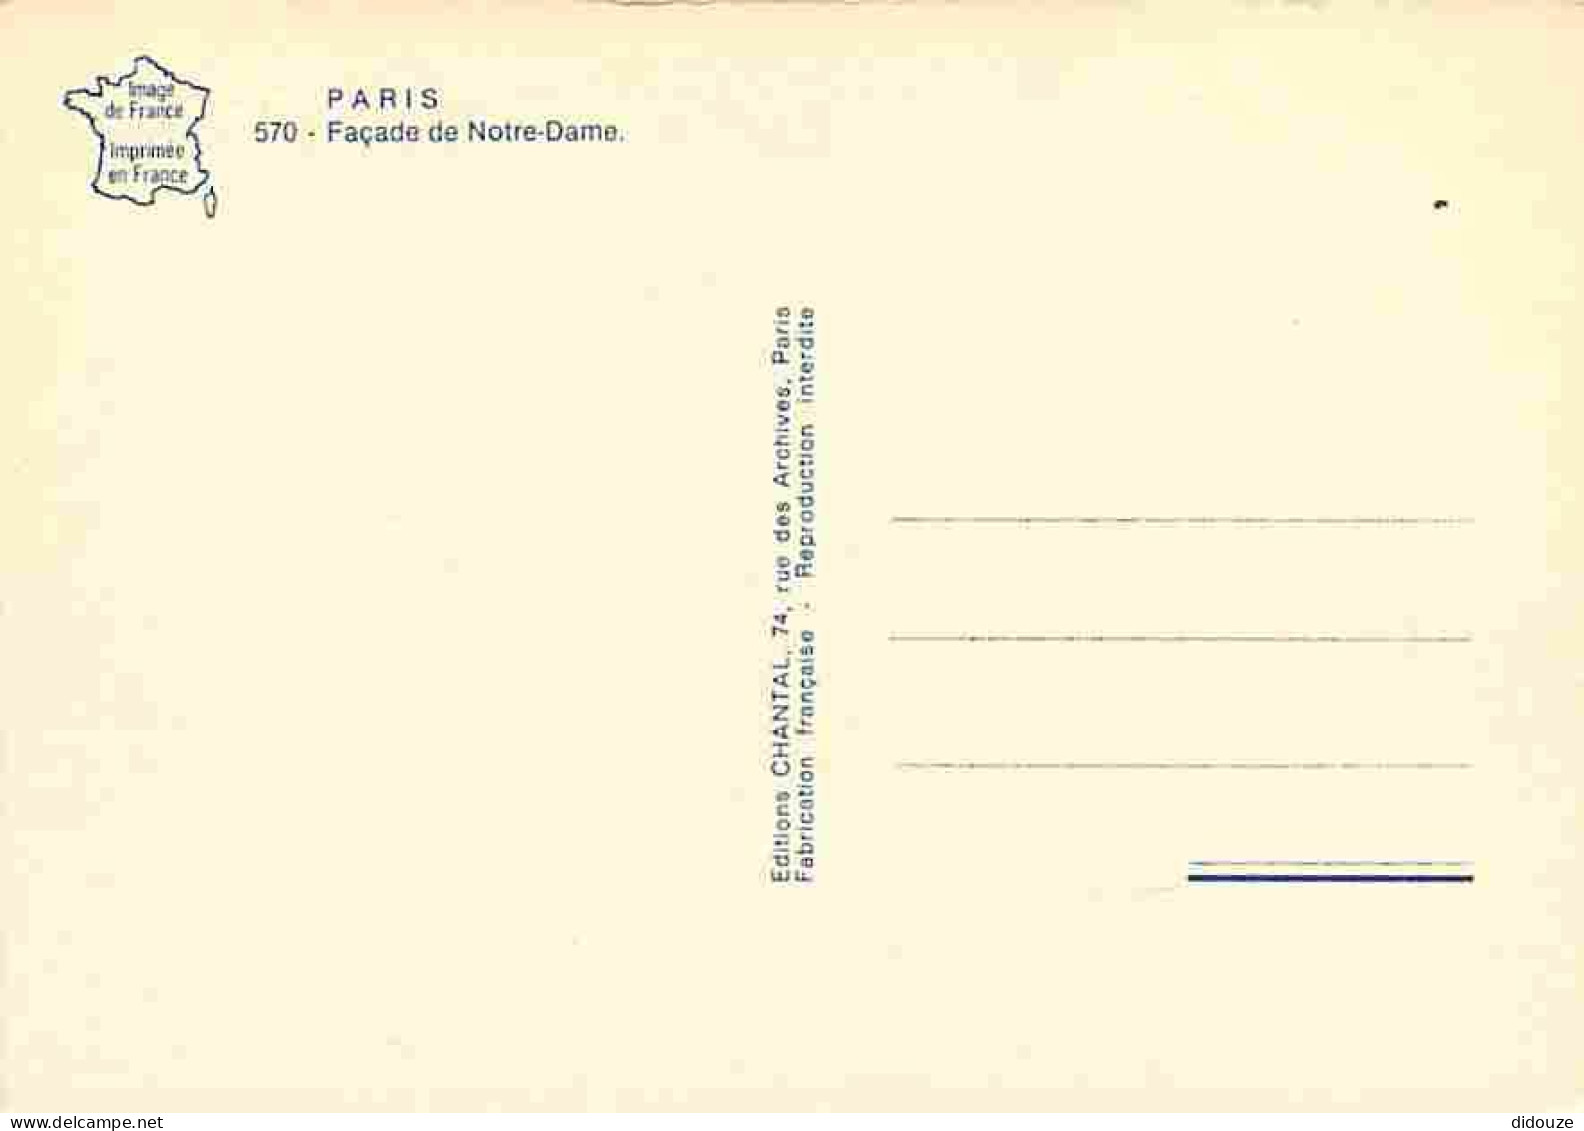 75 - Paris - Cathédrale Notre Dame - Façade - Carte Neuve - CPM - Voir Scans Recto-Verso - Notre Dame De Paris